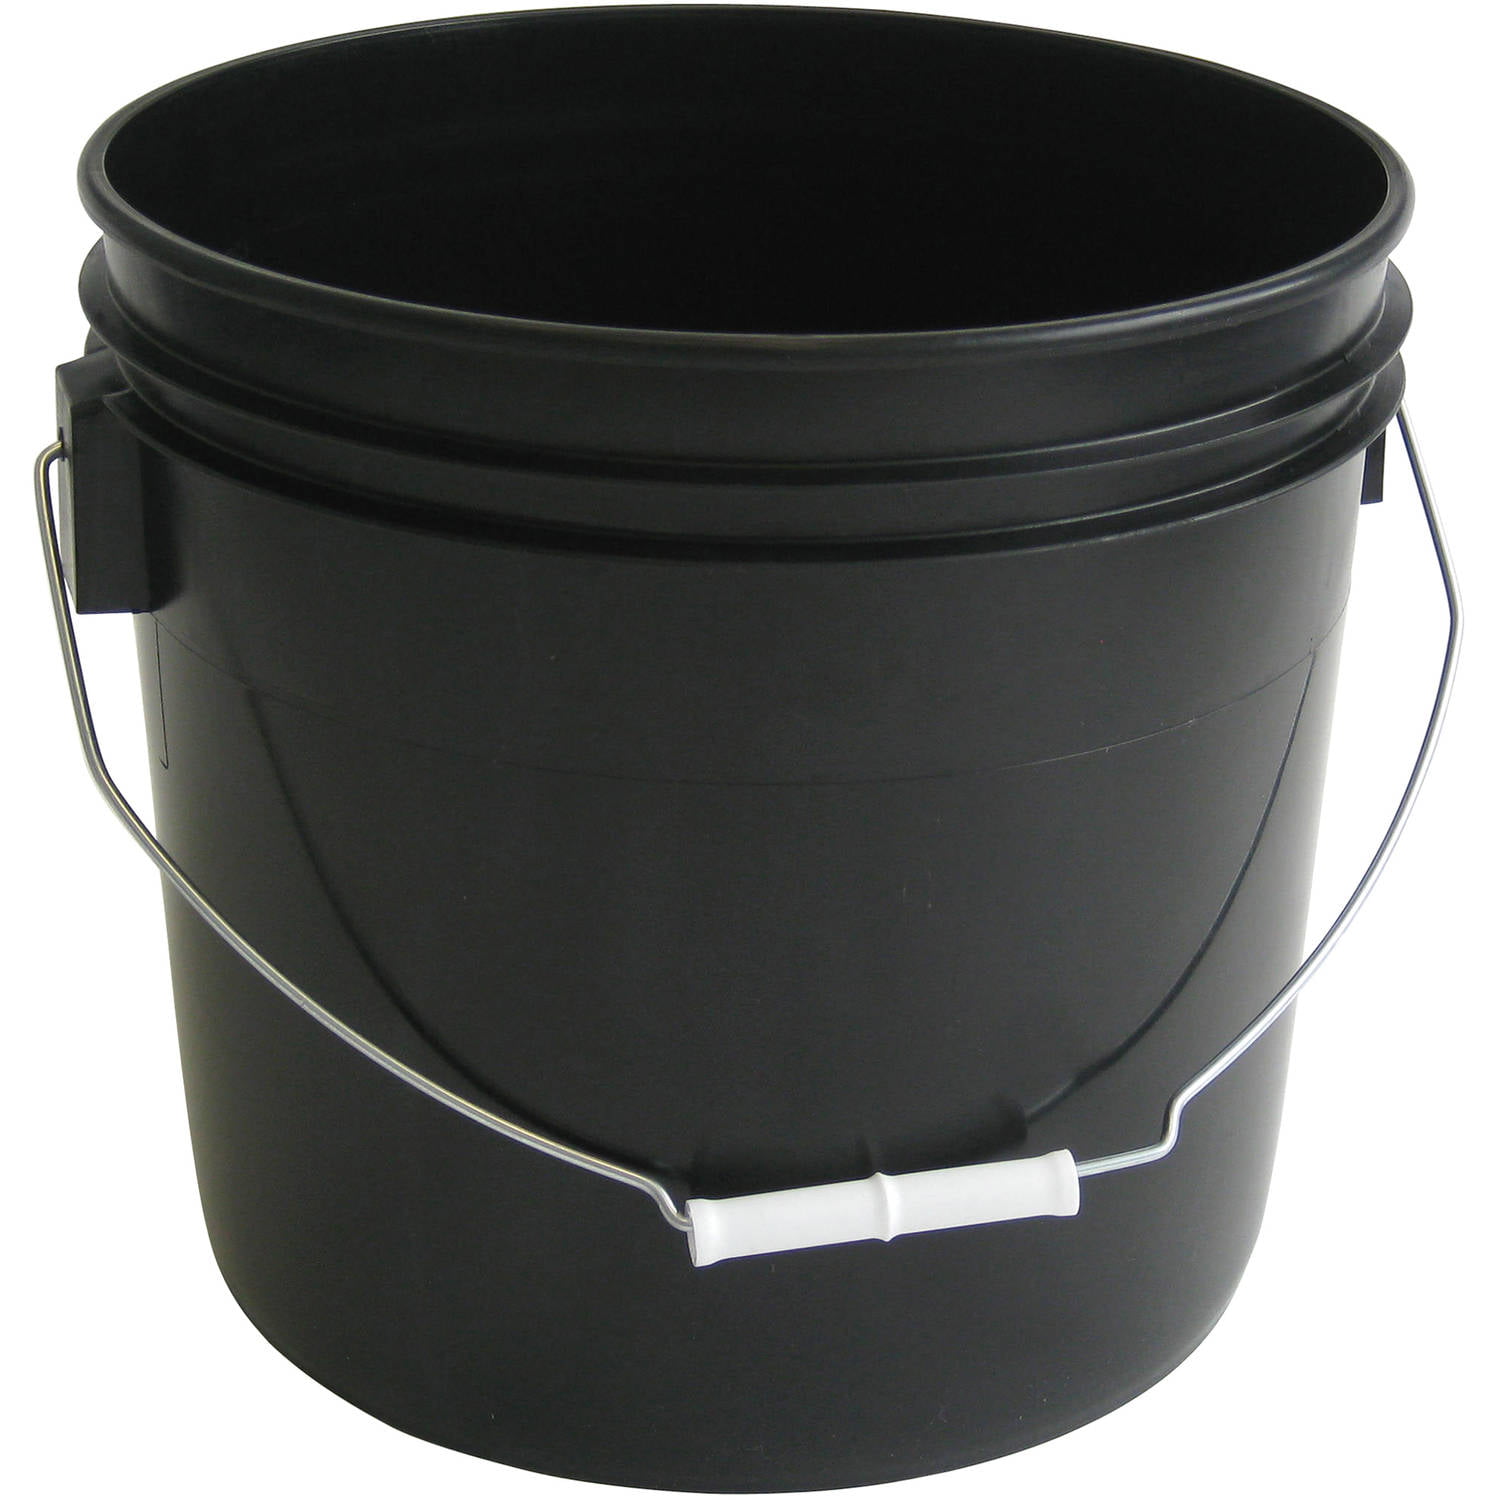 Argee 3.5 Gallon Black Bucket, 10-Pack - Walmart.com.